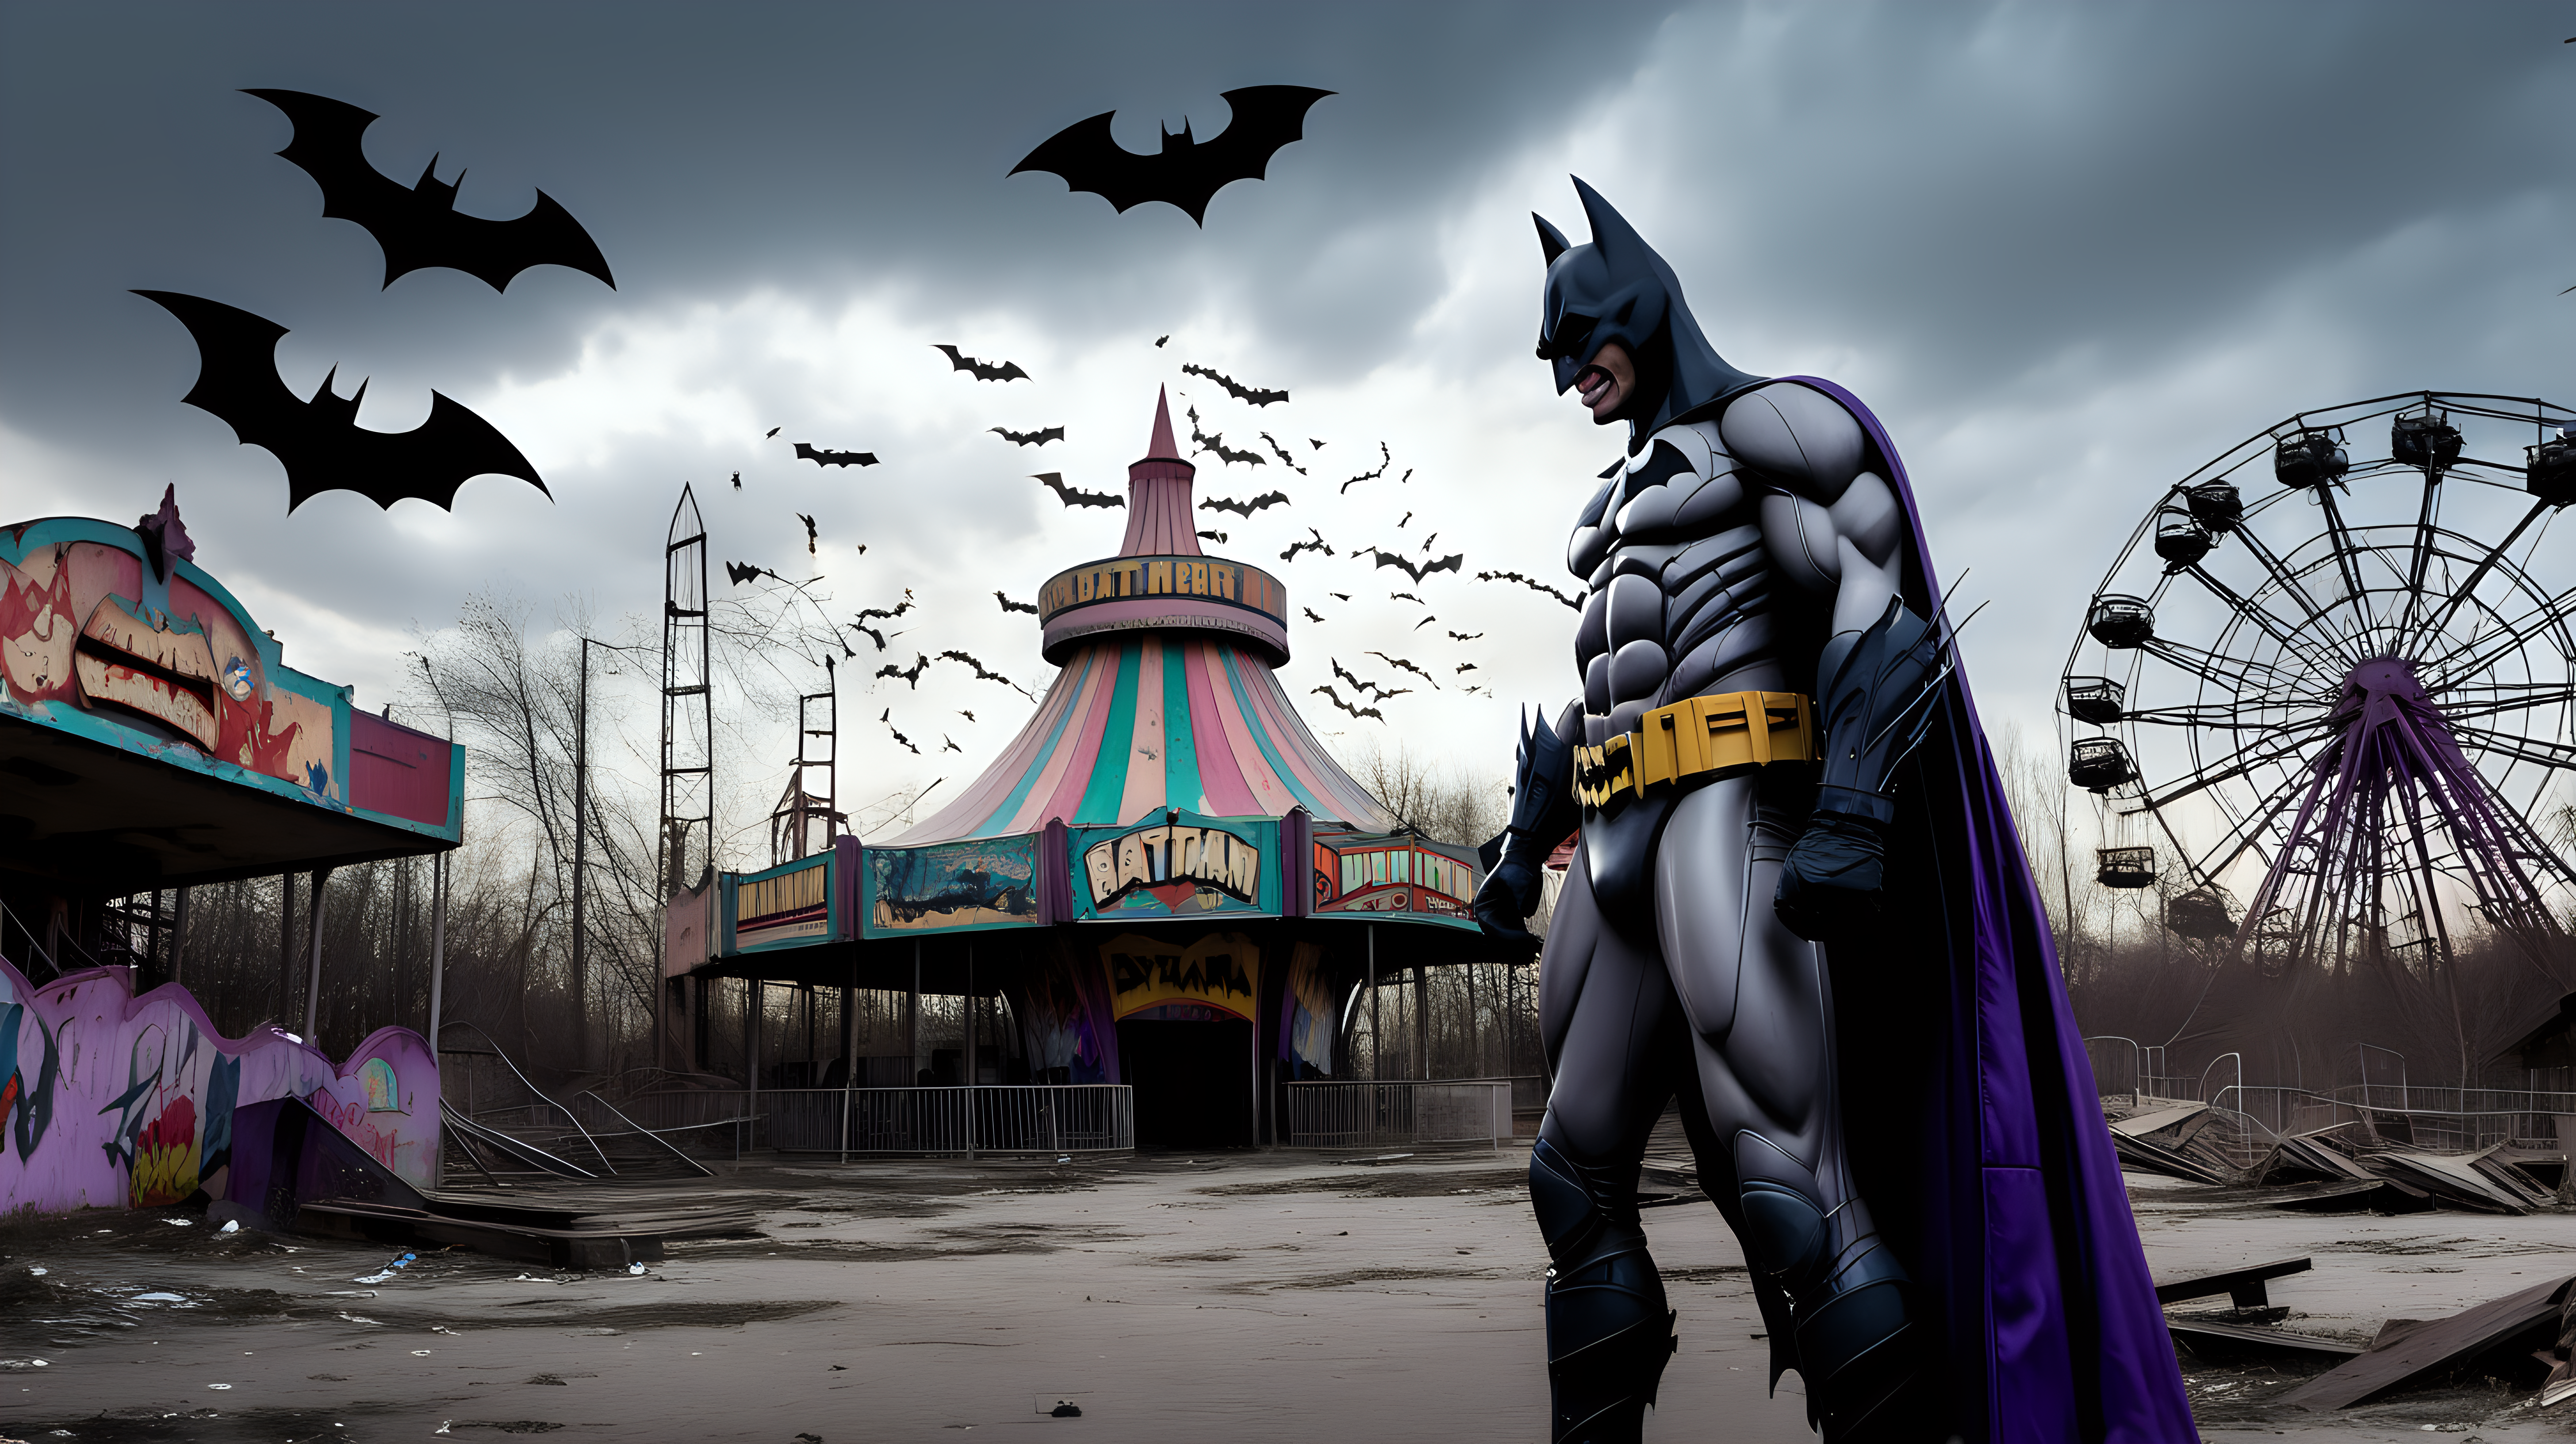 Batman fights the Joker in an abandoned amusement